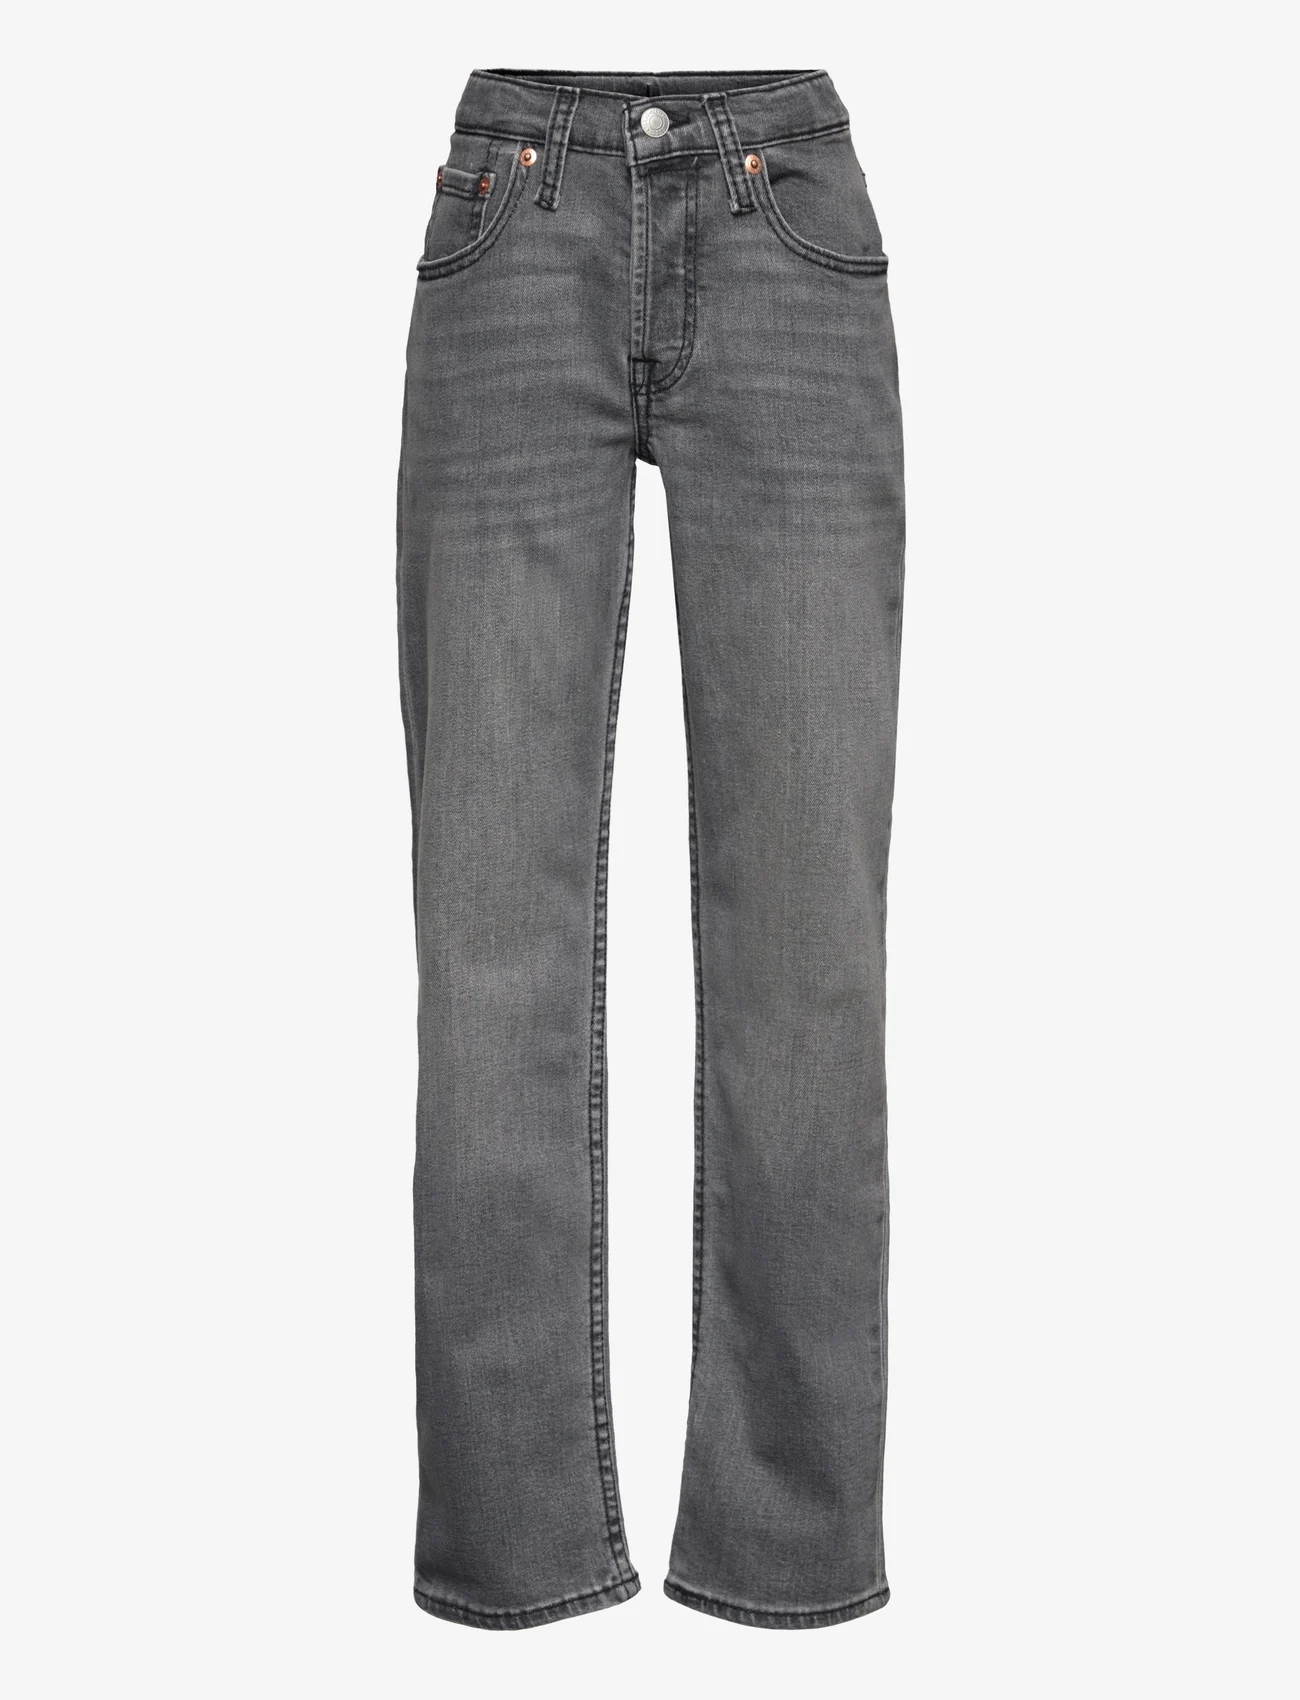 Levi's - Levi's® 501® Original Jeans - Įprasto kirpimo džinsai - grey - 0